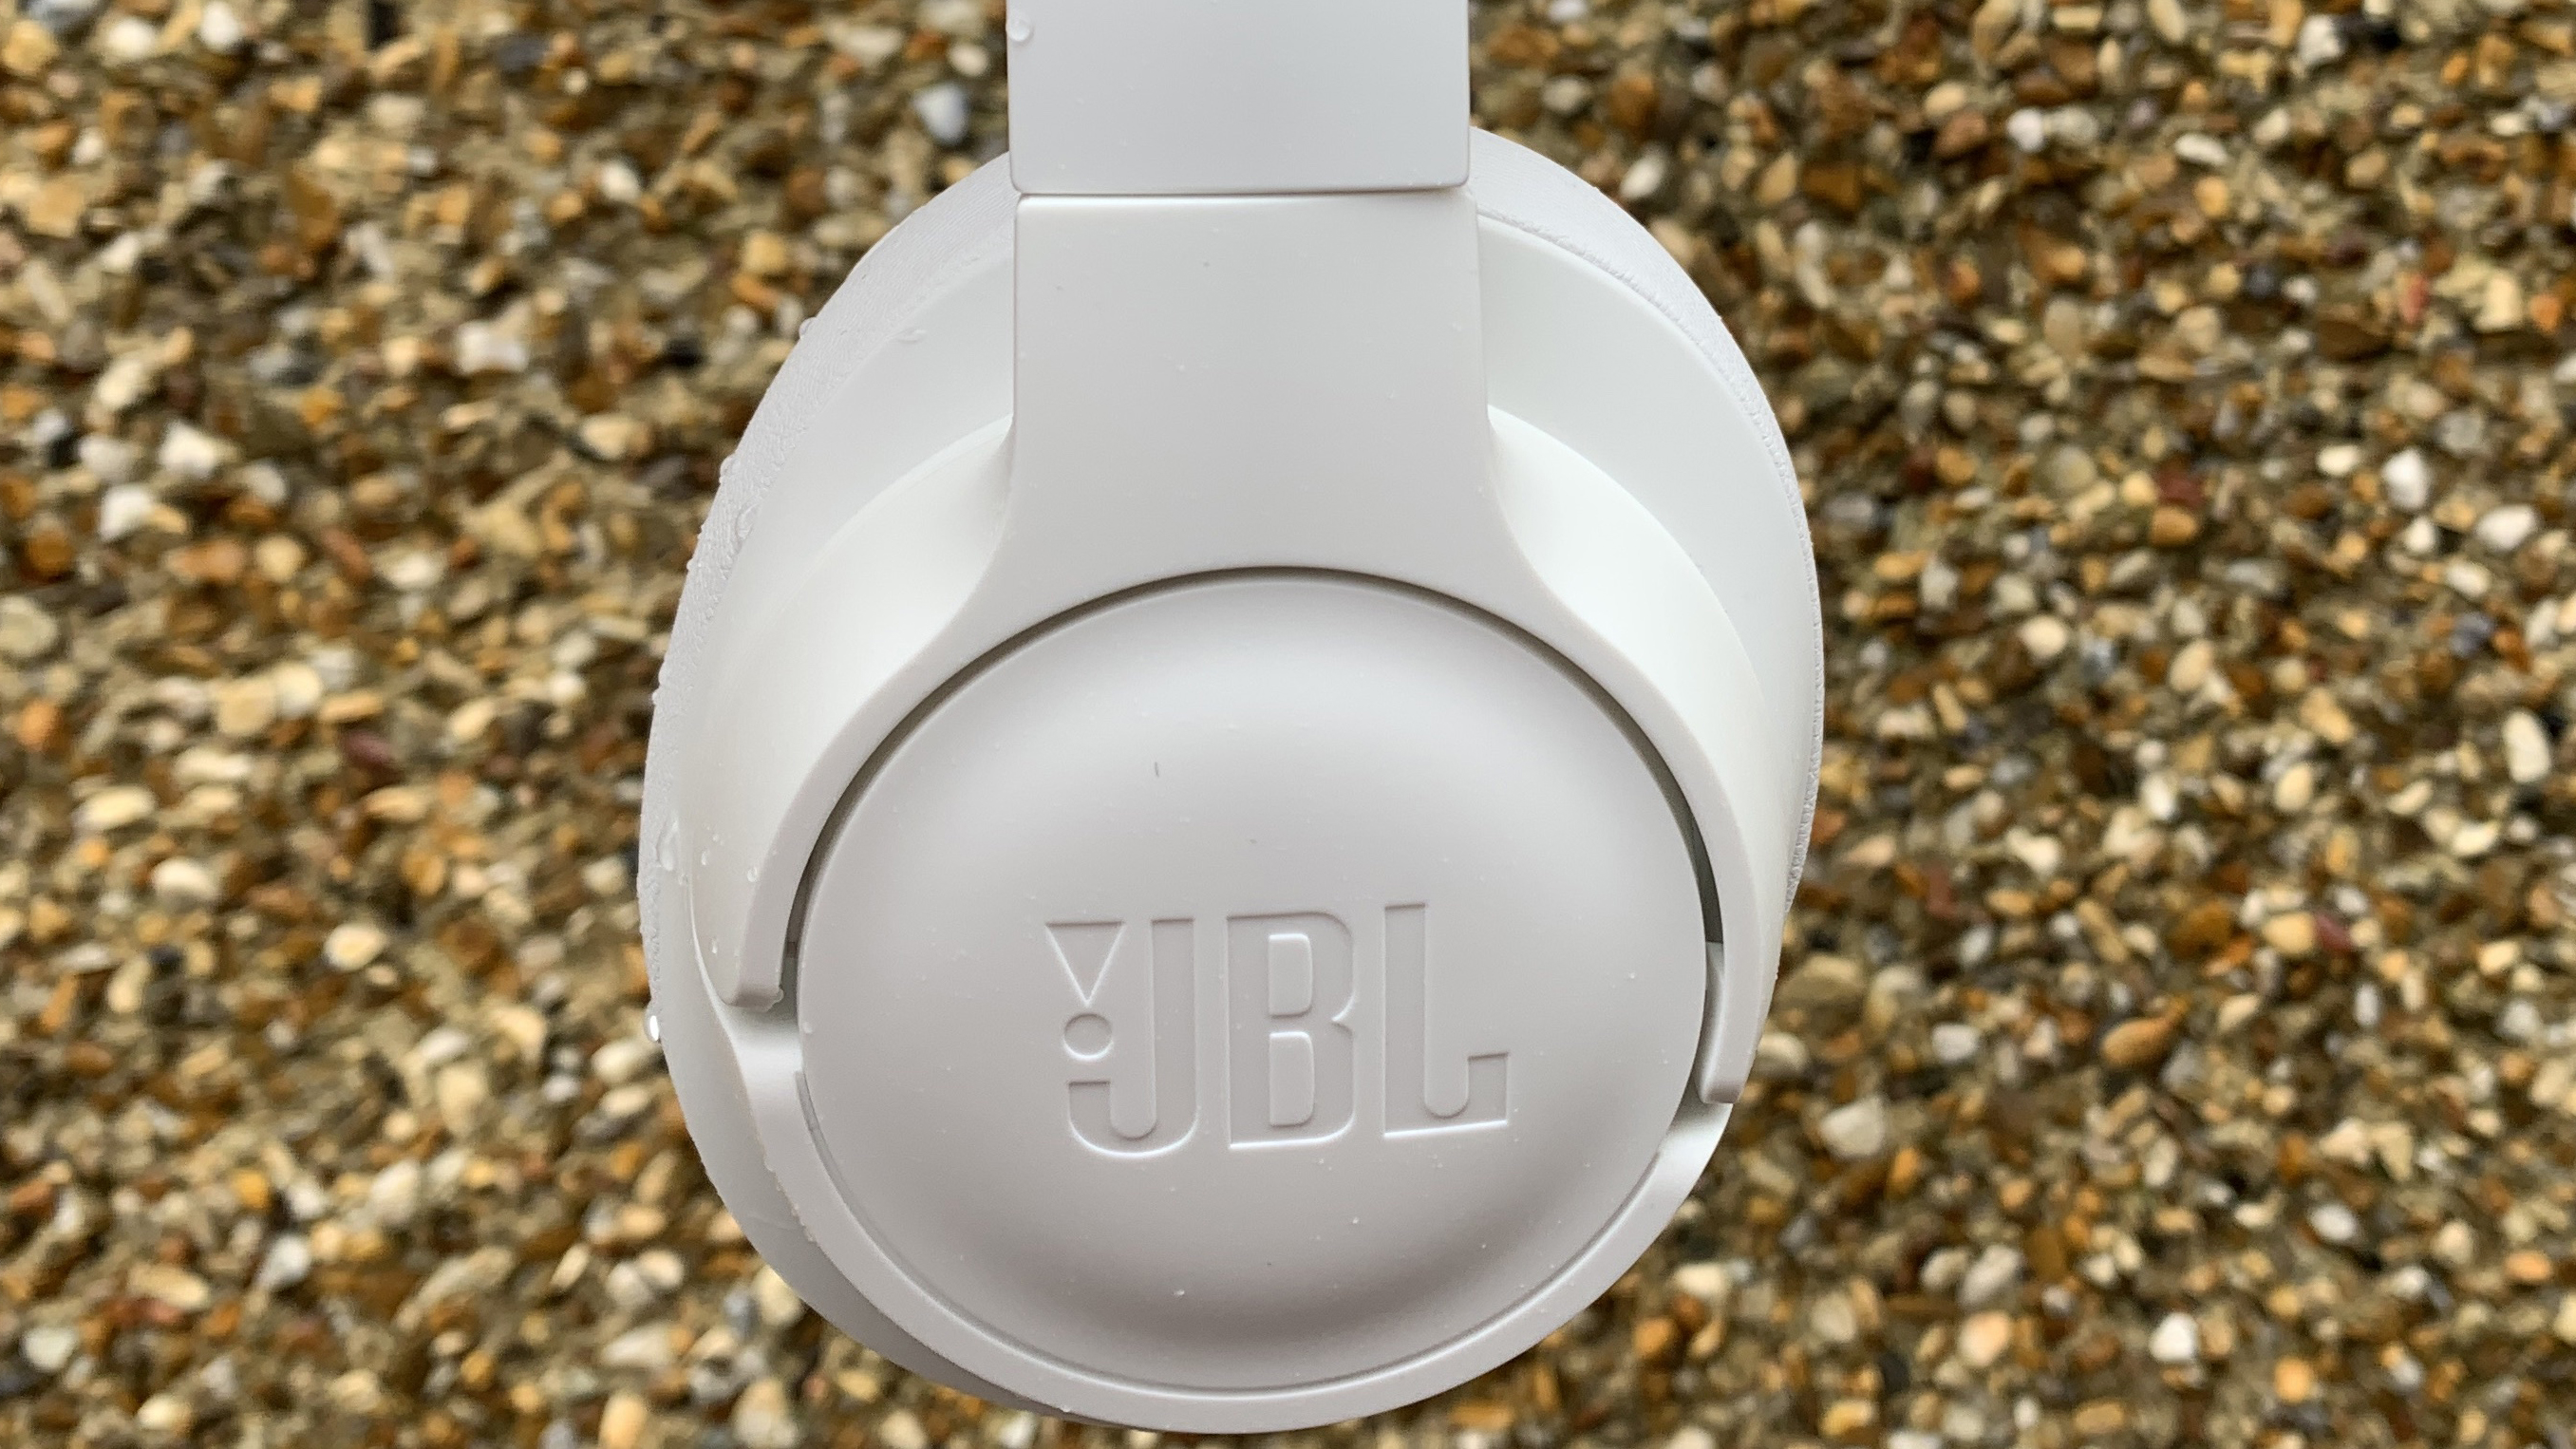 Tampilan dekat bagian luar salah satu cangkir headphone jbl tune 750btnc berwarna putih